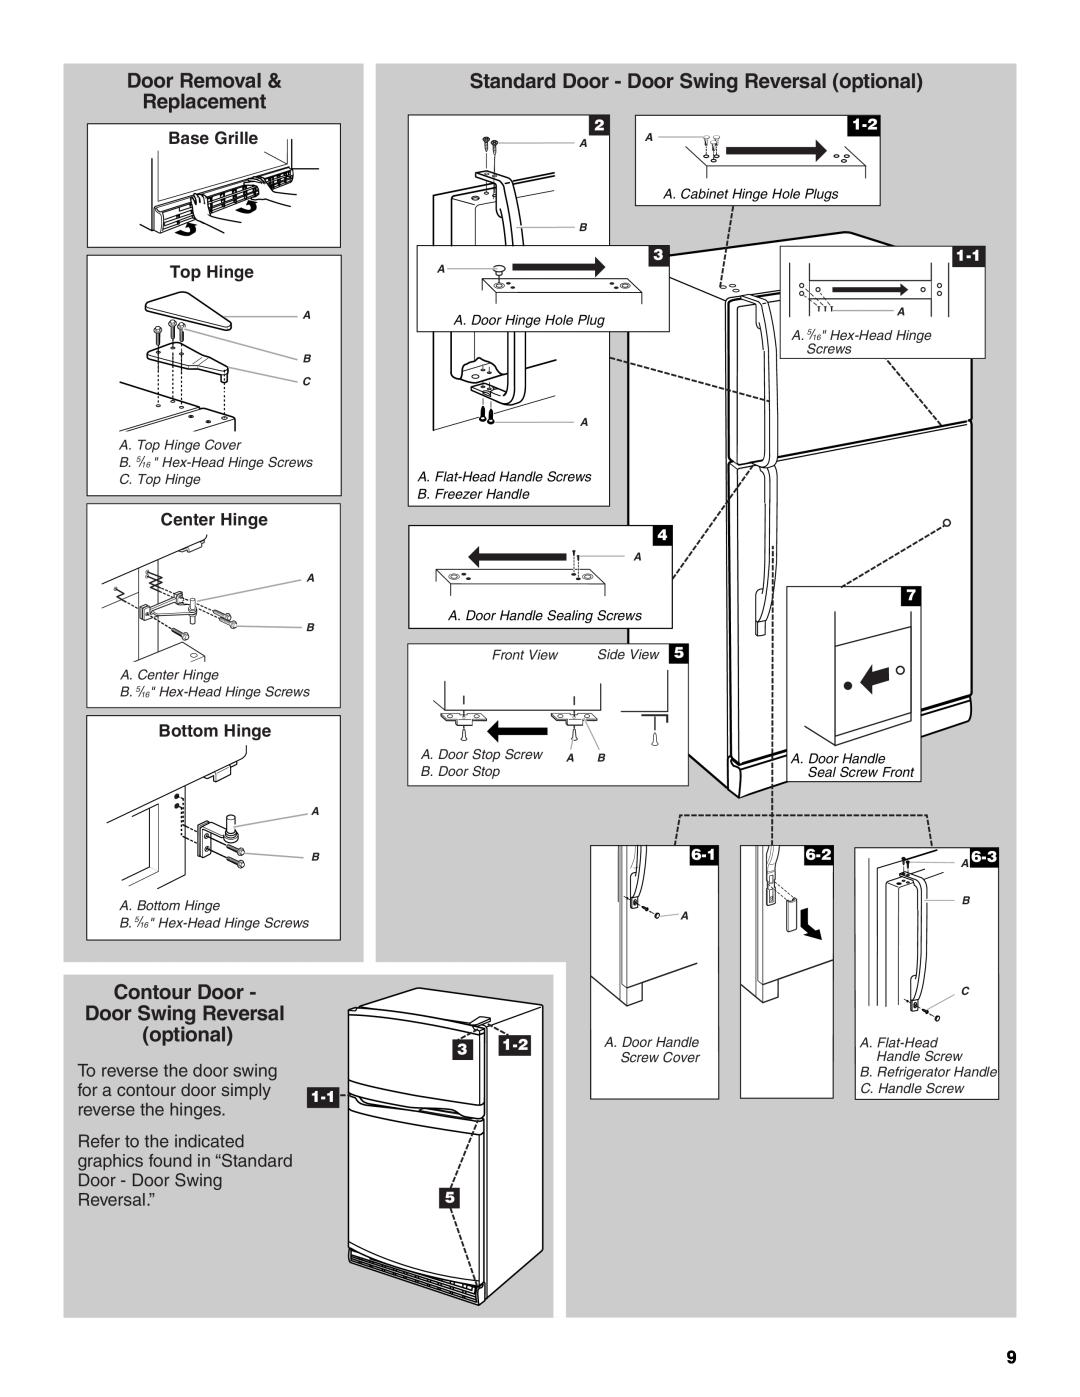 Whirlpool Refrigerator Door Removal, Standard Door - Door Swing Reversal optional, Replacement, To reverse the door swing 